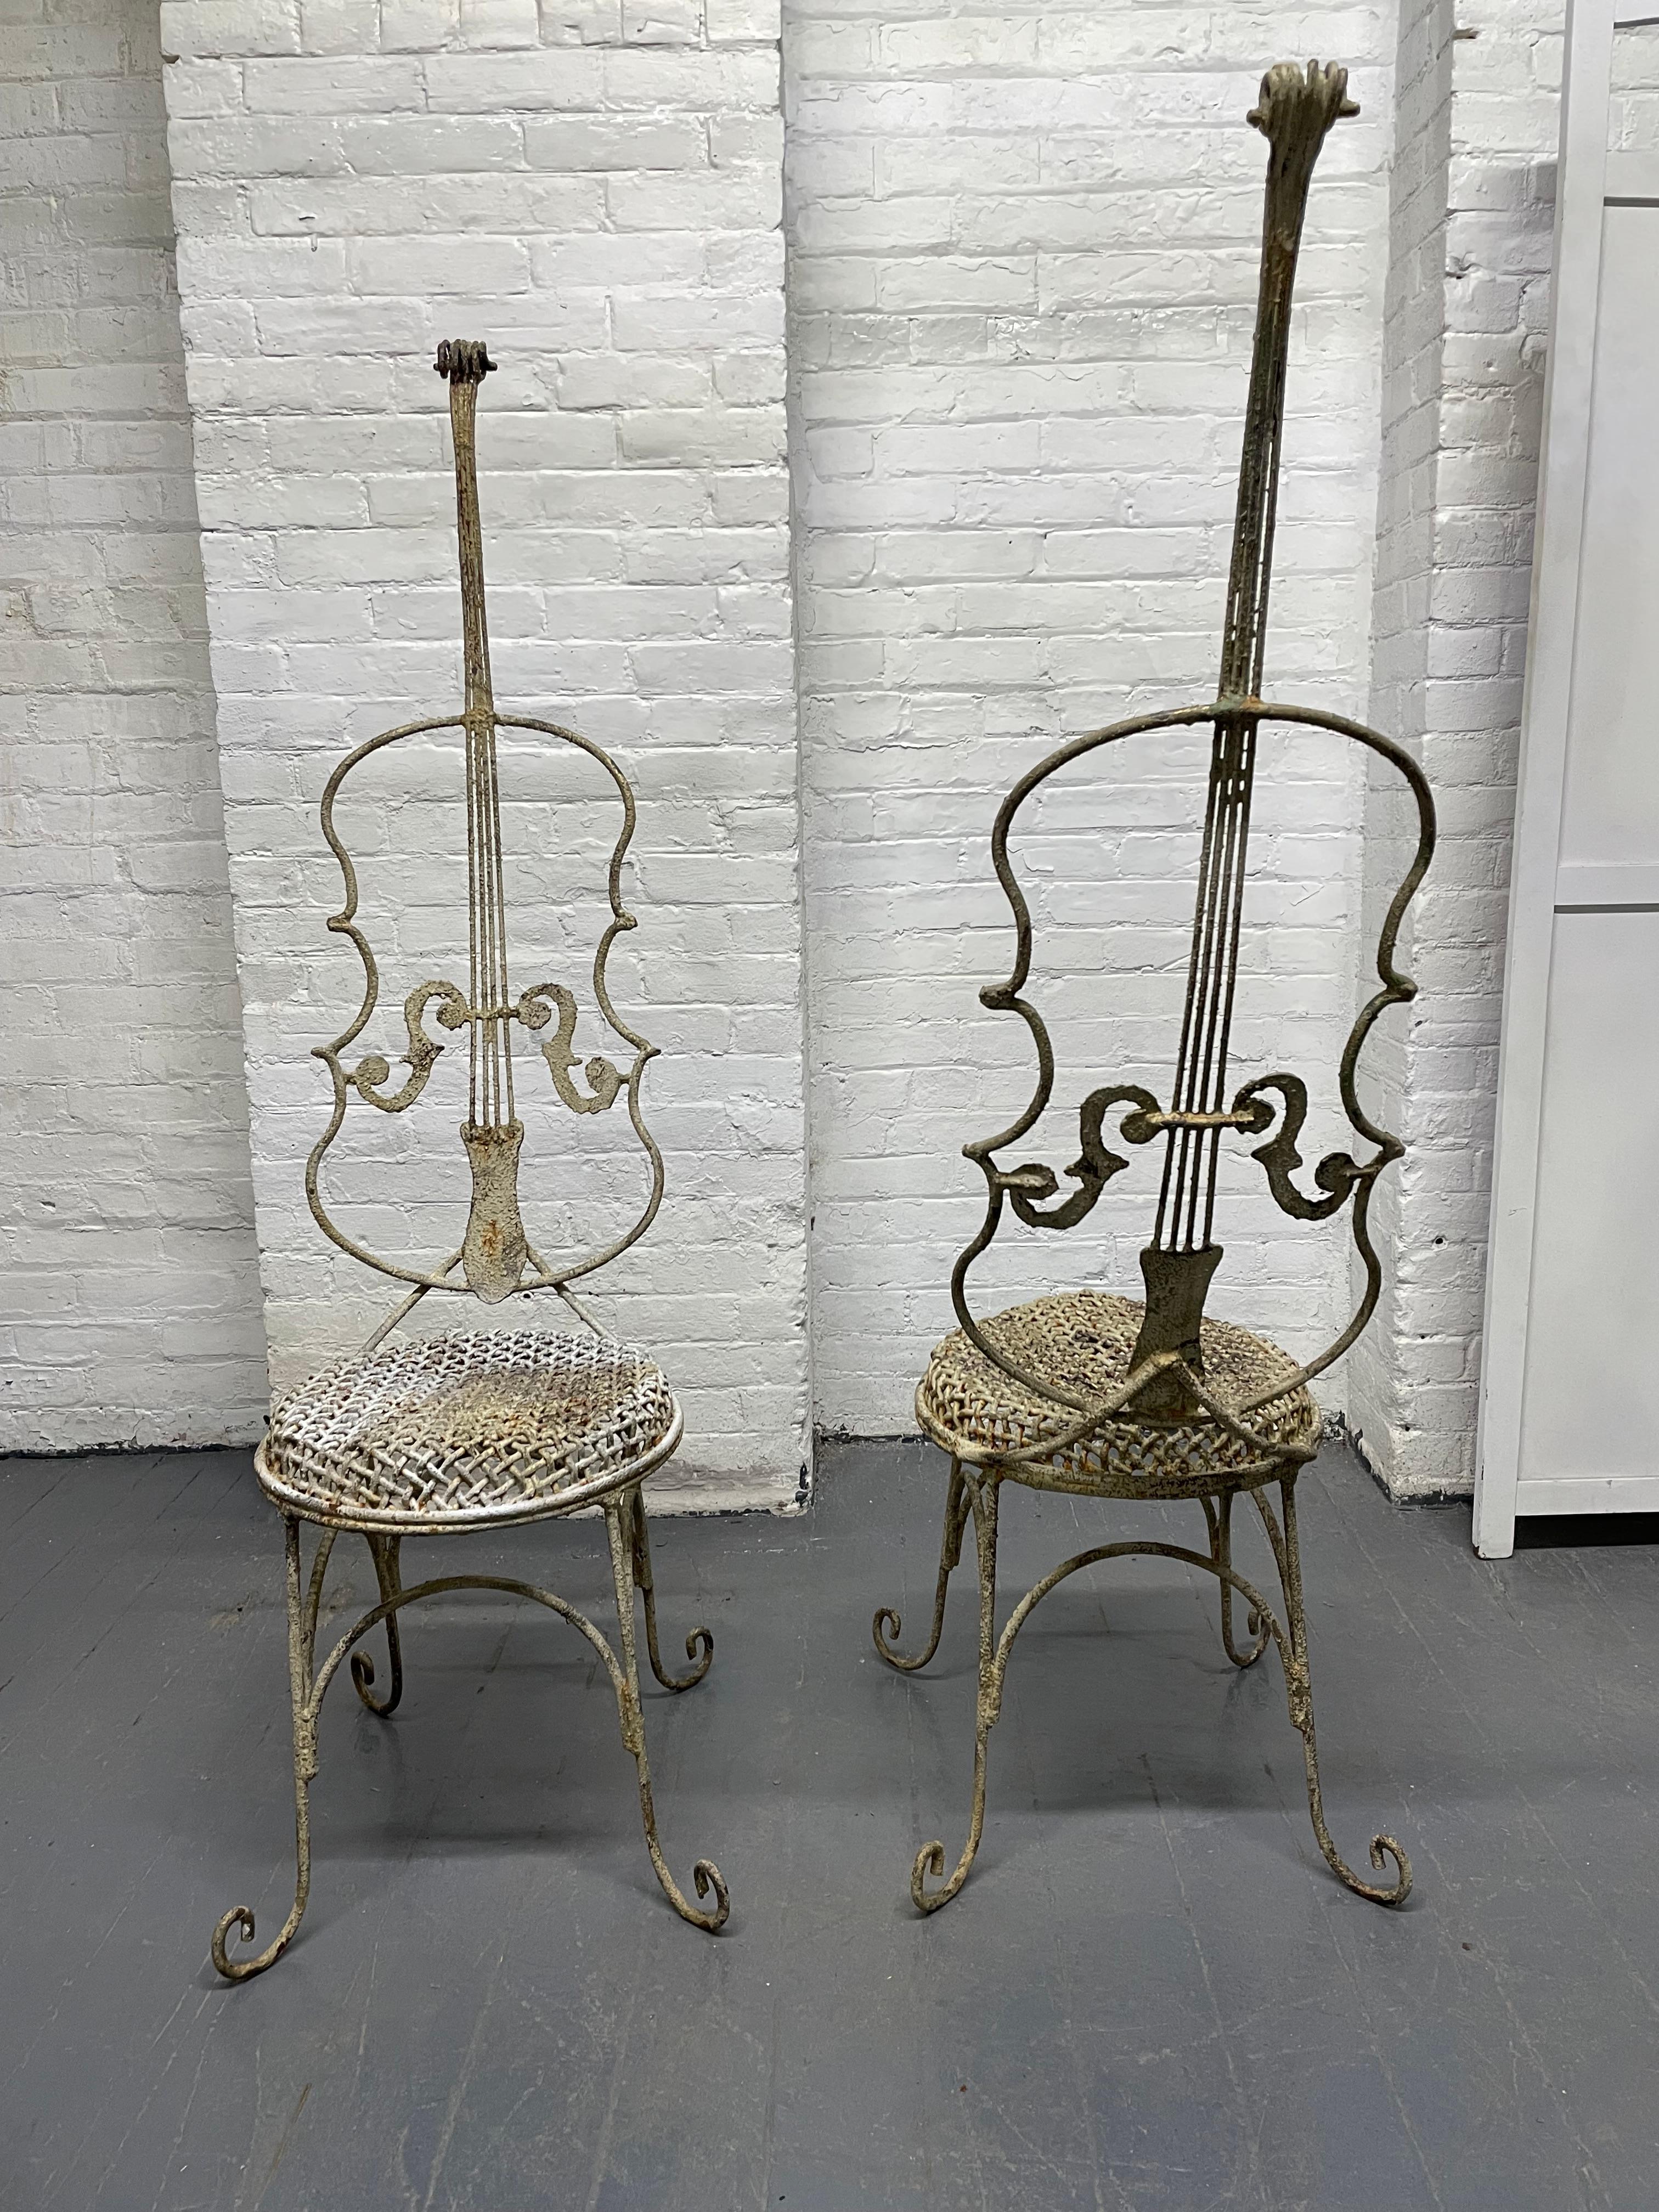 Paar bemalte eiserne Stühle in Form einer Trommel im Vintage-Stil. Die Stühle haben geschwungene Füße, hohe Rückenlehnen und erhabene runde Sitze im Korbgeflechtstil.